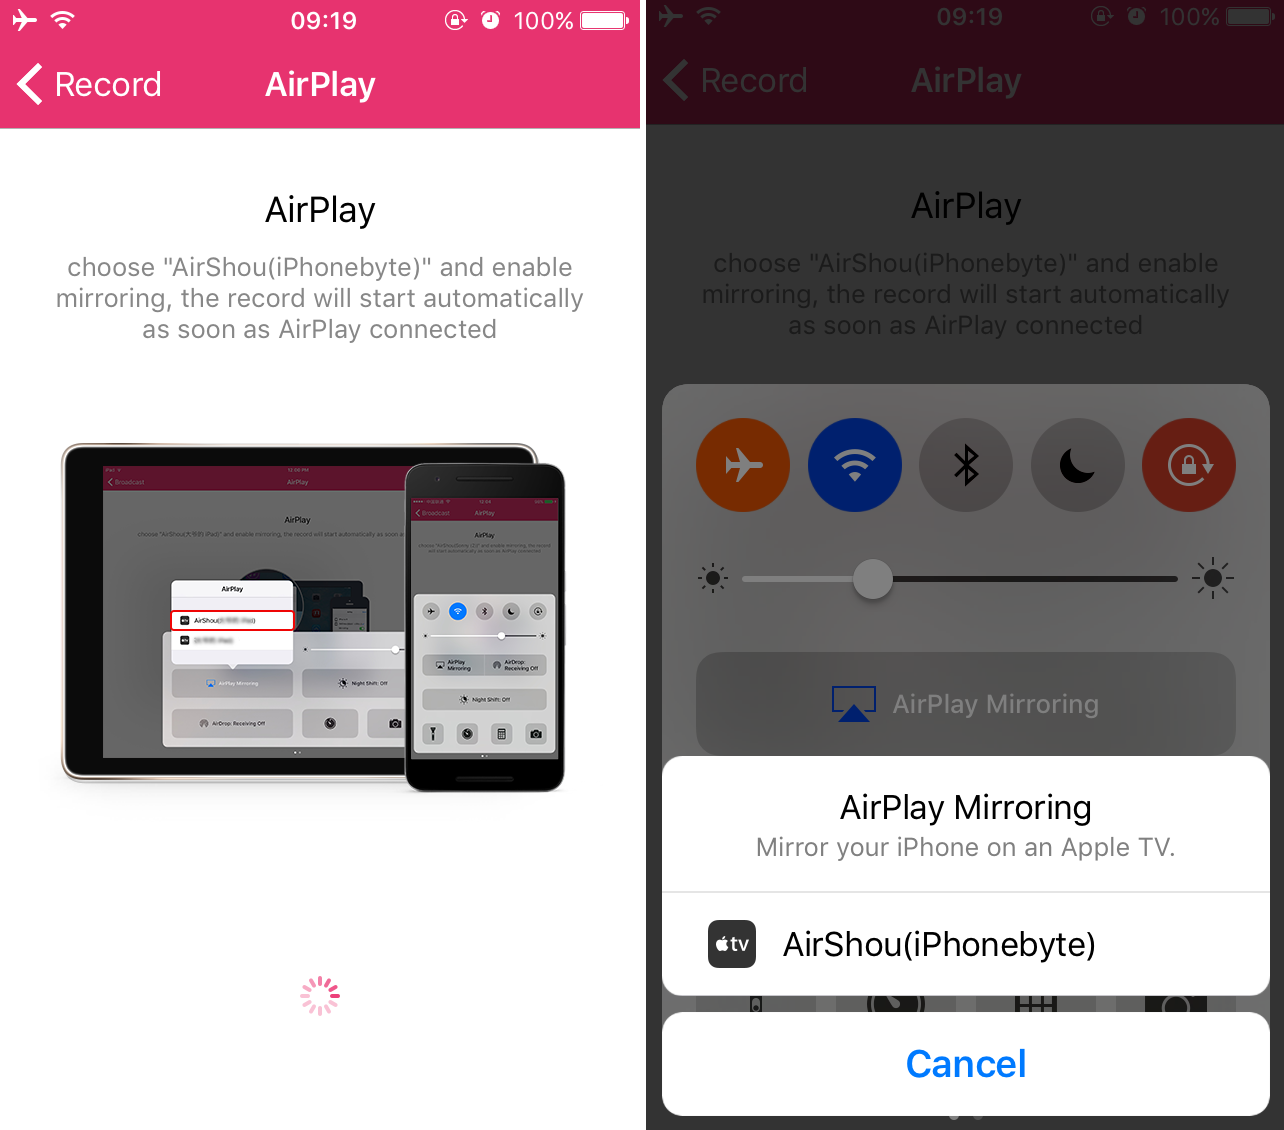 Menggunakan AirShou untuk merekam layar iPhone